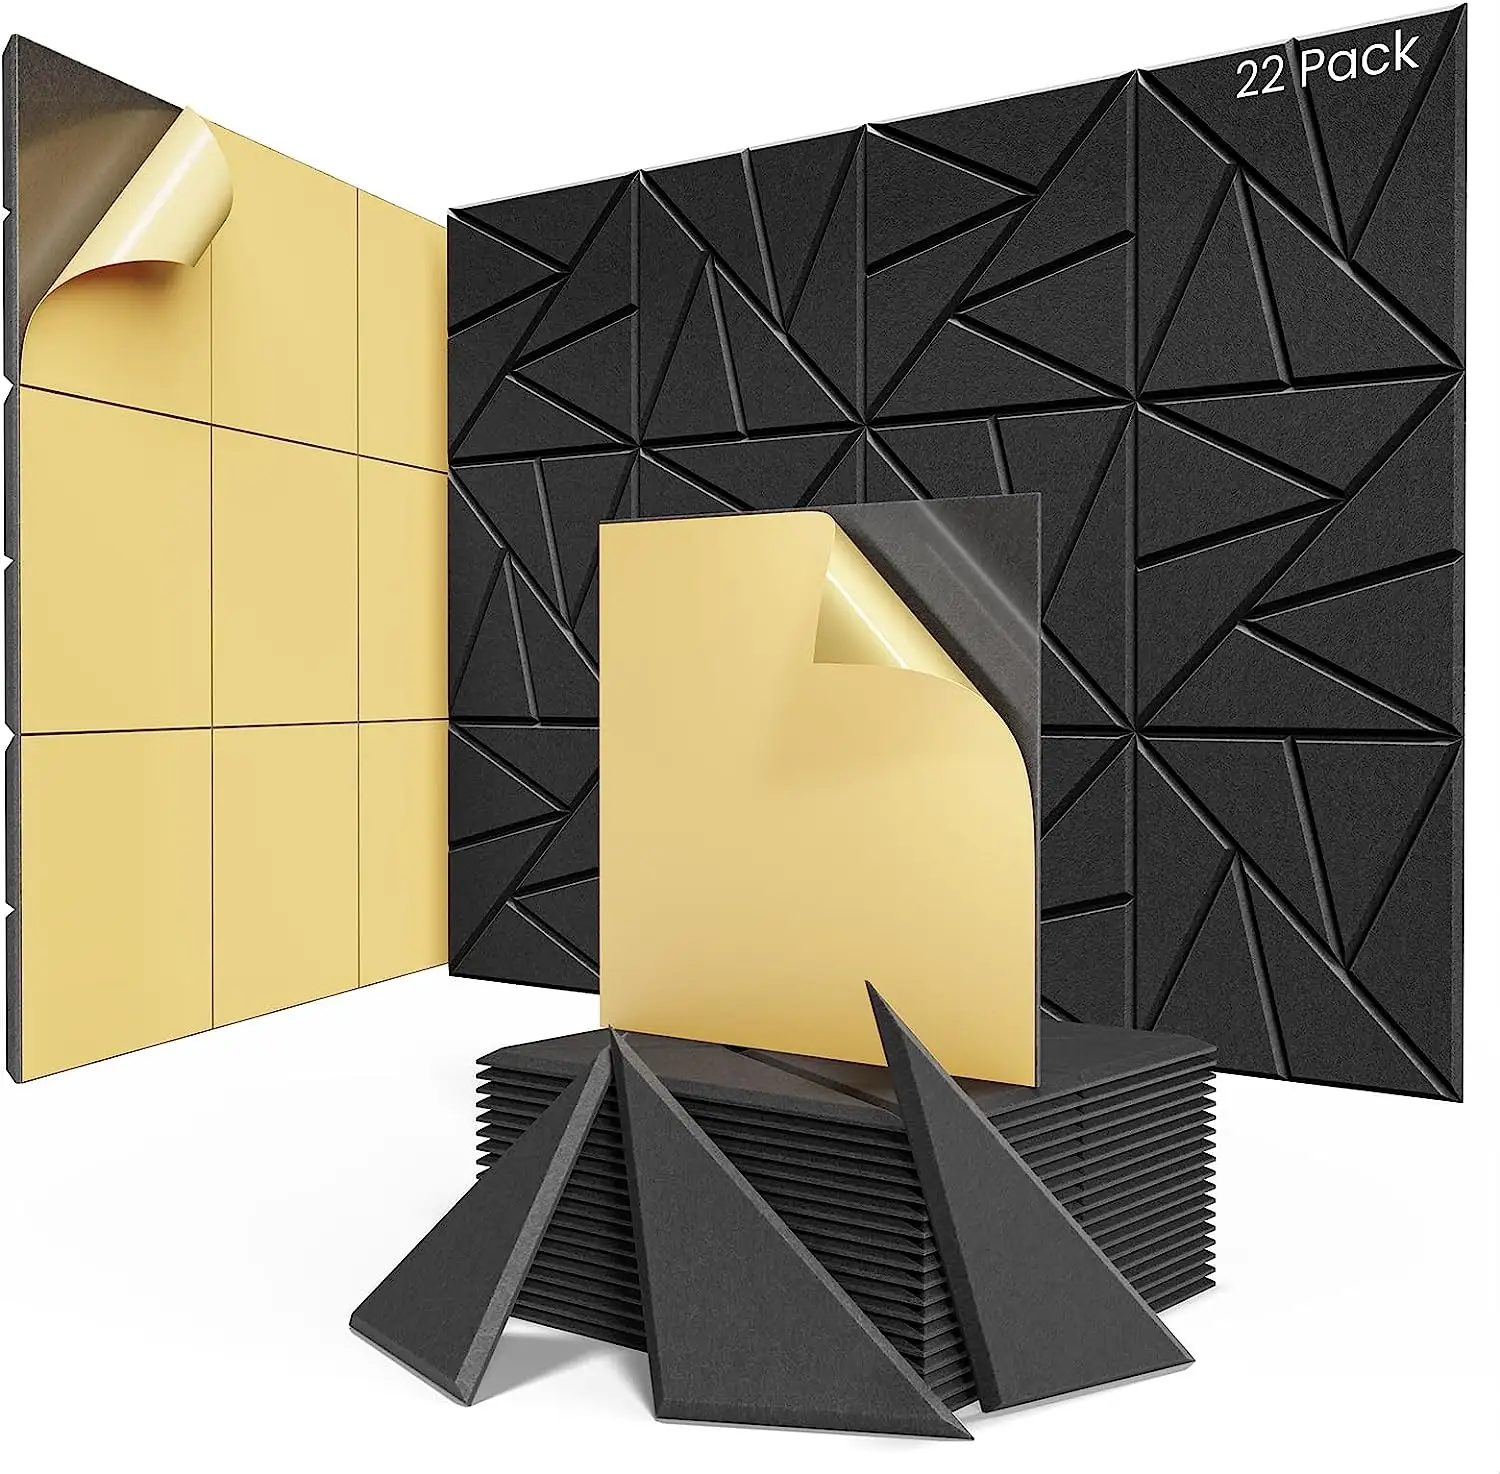 Panel dinding 3D akustik hewan peliharaan desain Modern Panel dinding kedap suara bahan poliester Dekorasi Interior ruang gym Studio